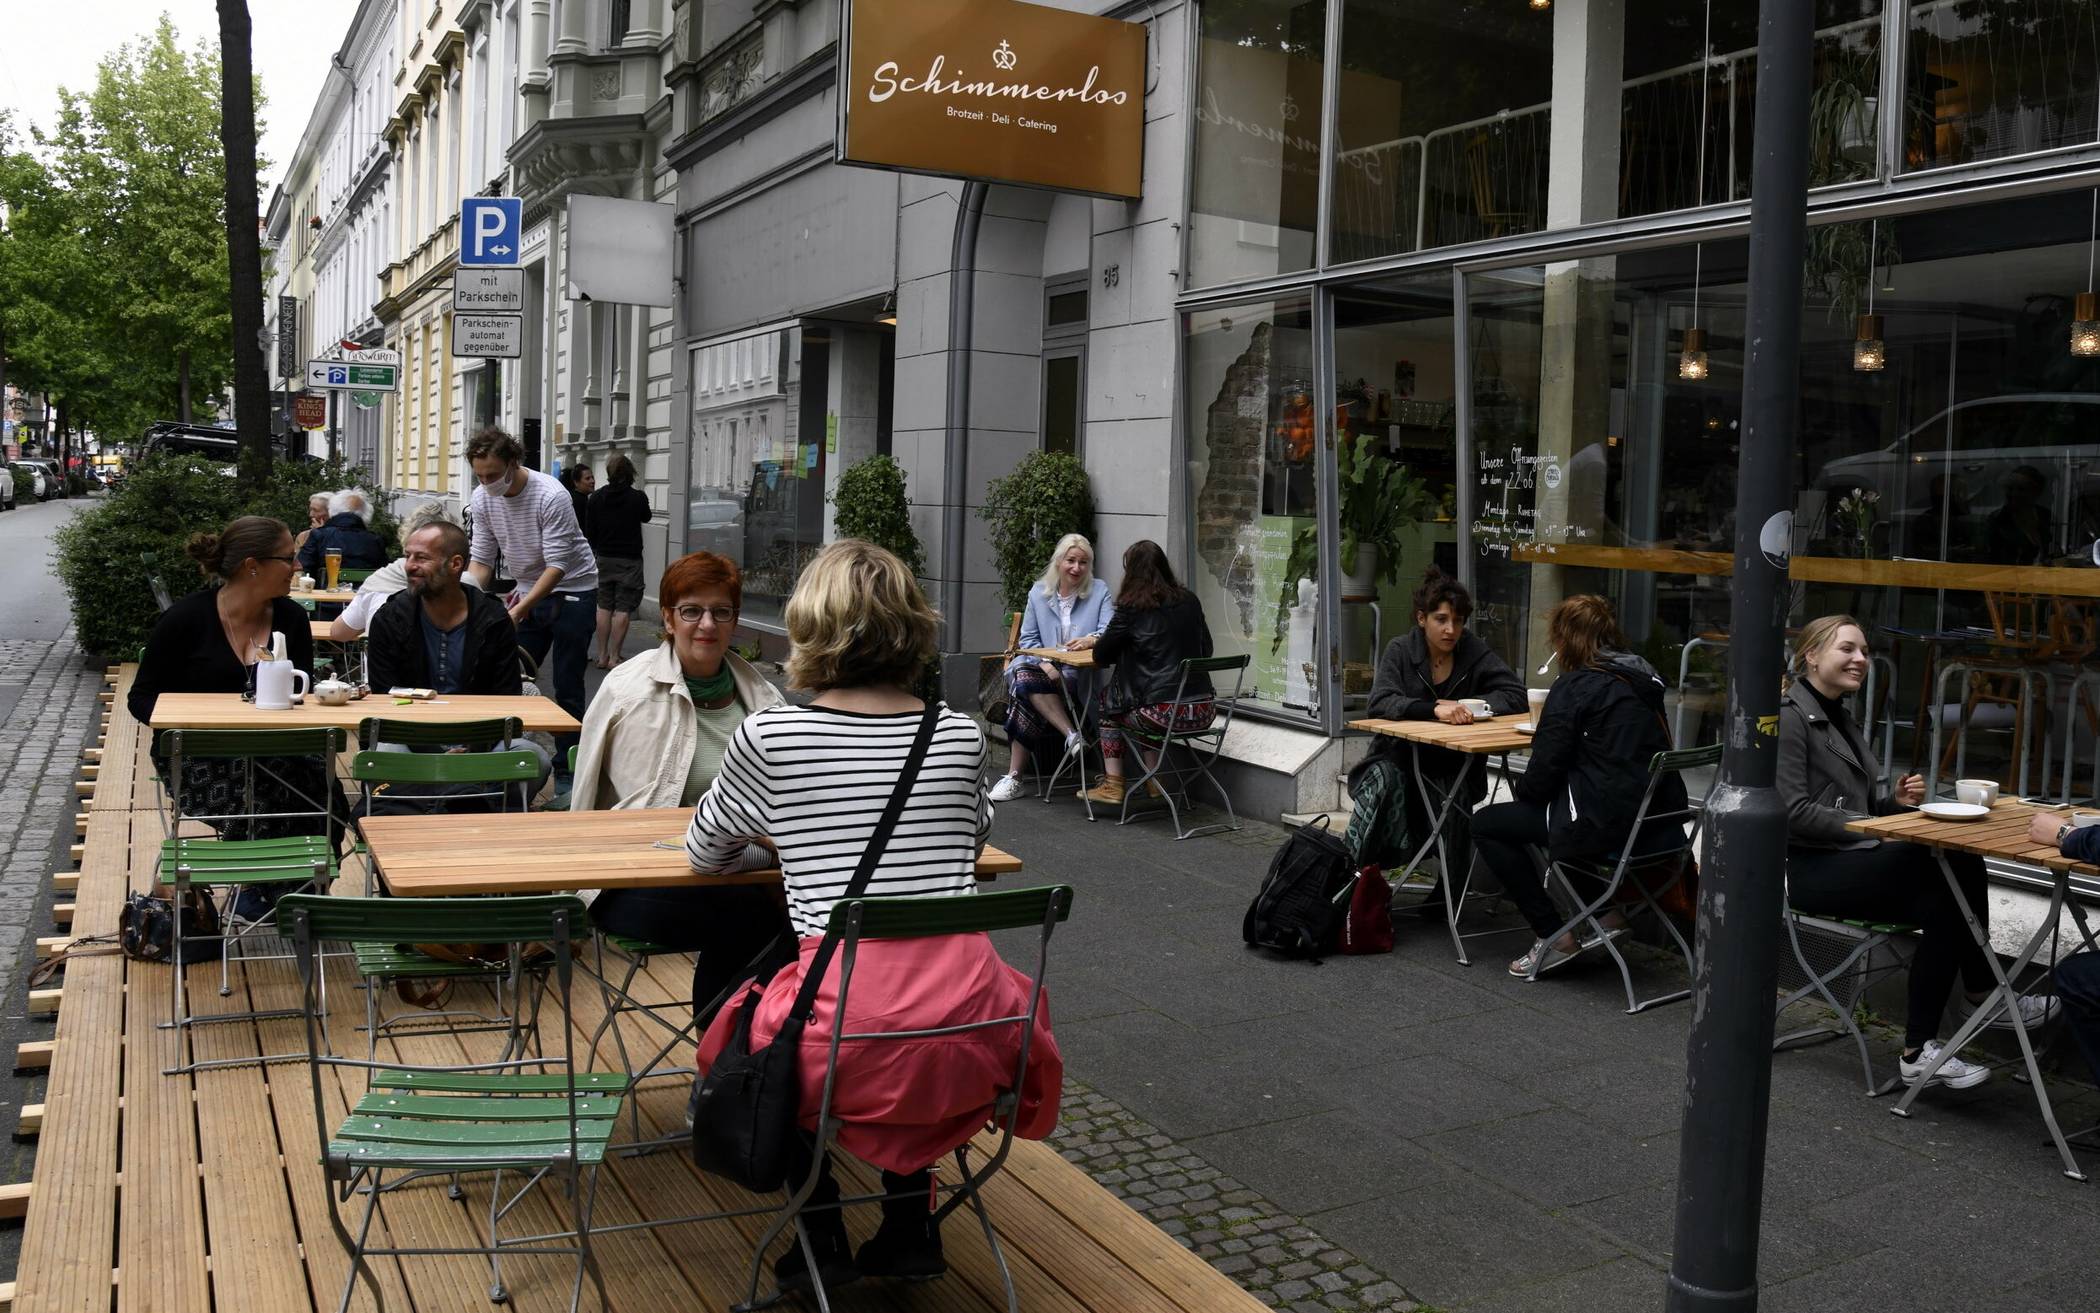 Im Café Schimmerlos an der Friedrich-Ebert-Straße freut man sich über zusätzliche Außenplätze auf dem Parkstreifen. Die nötige Abtrennung zur Straße folgt in Kürze.